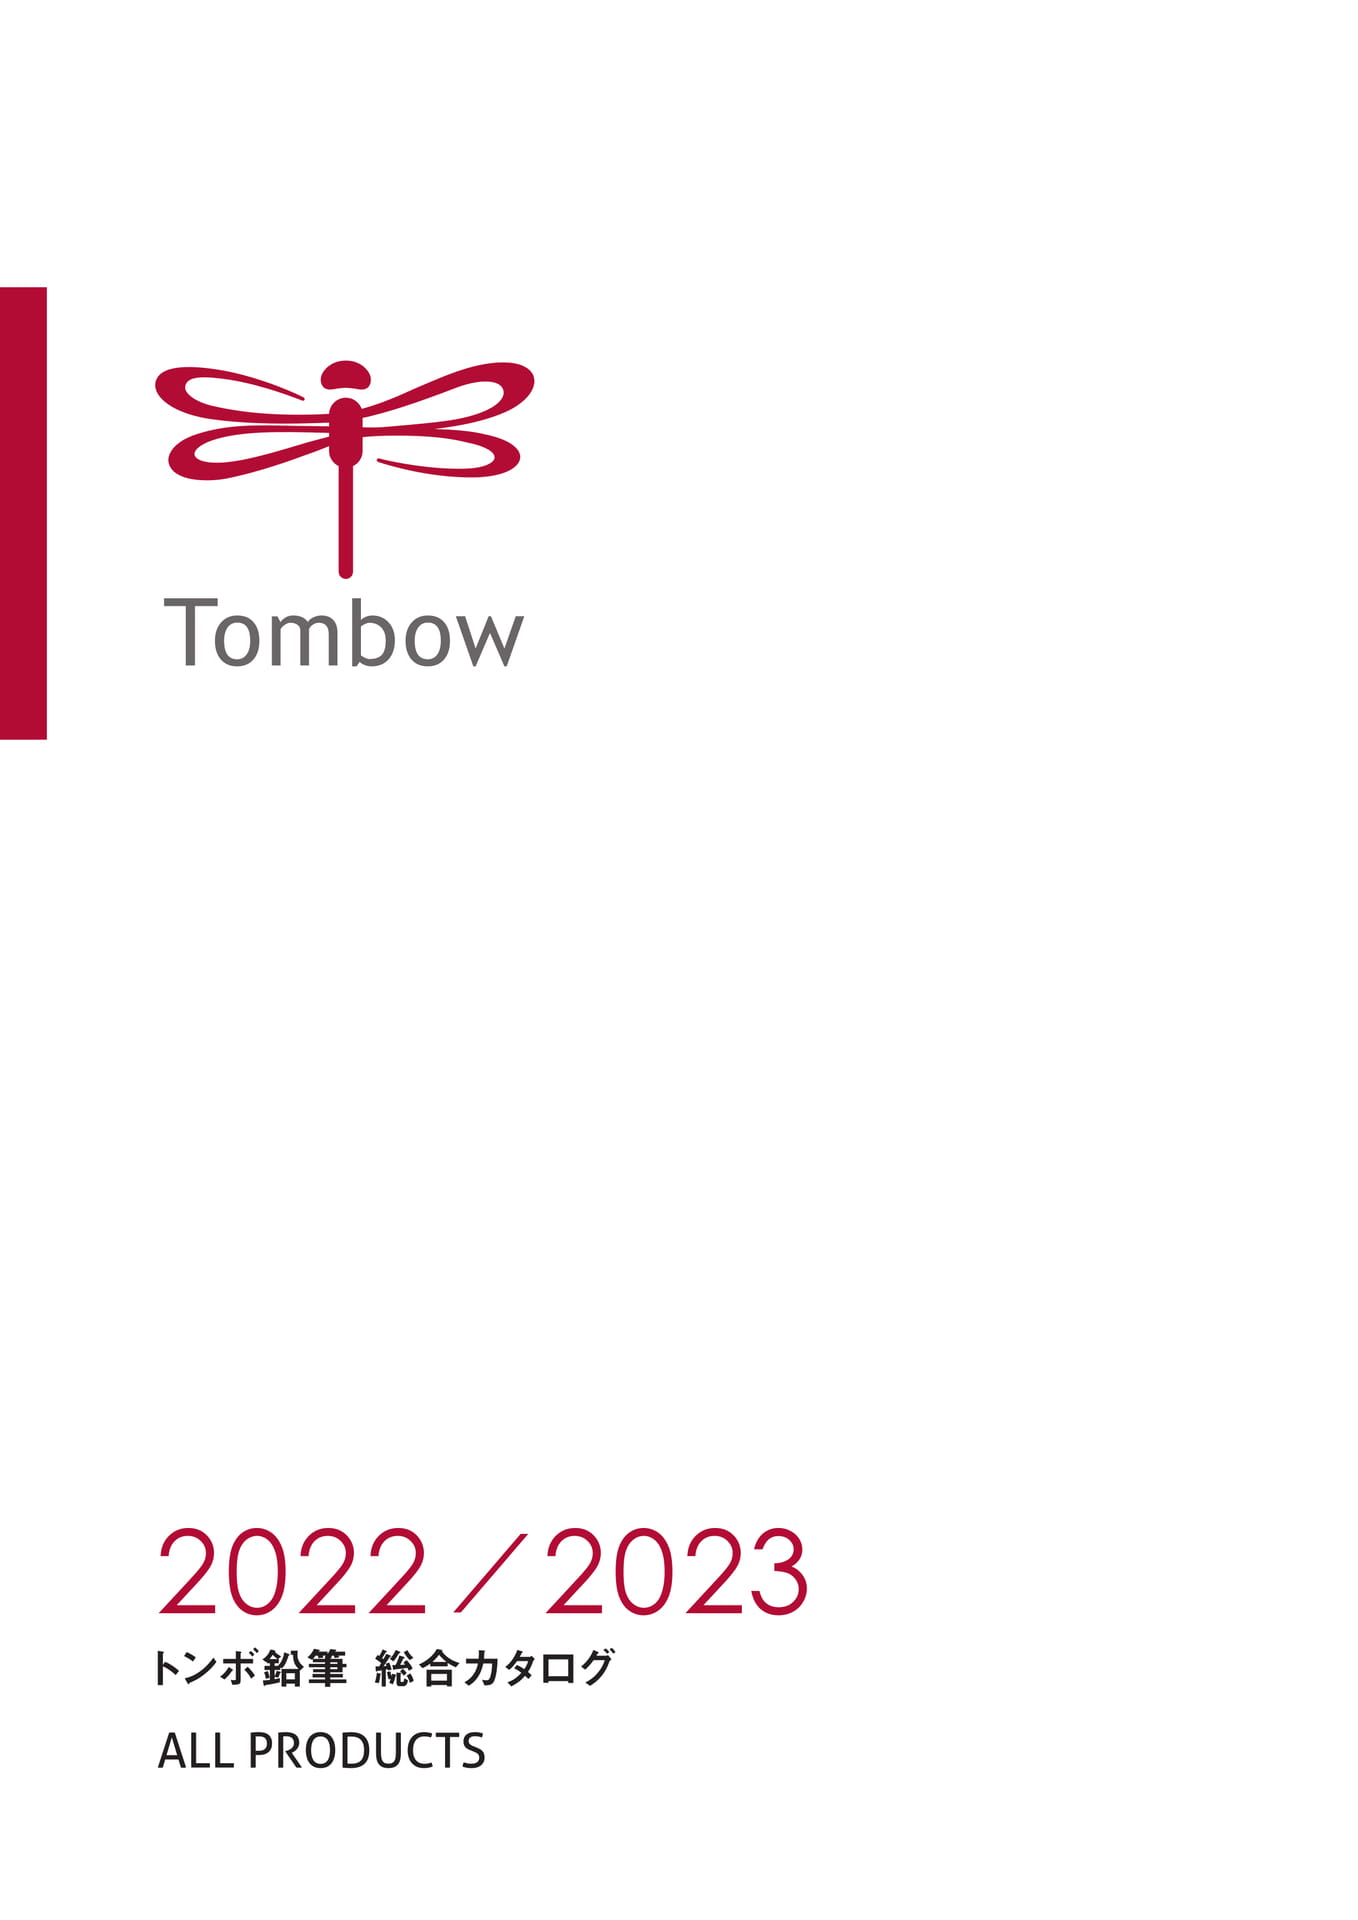 2022_2023トンボ鉛筆総合カタログ_増刊号反映_末尾に増刊号付 | ebook5